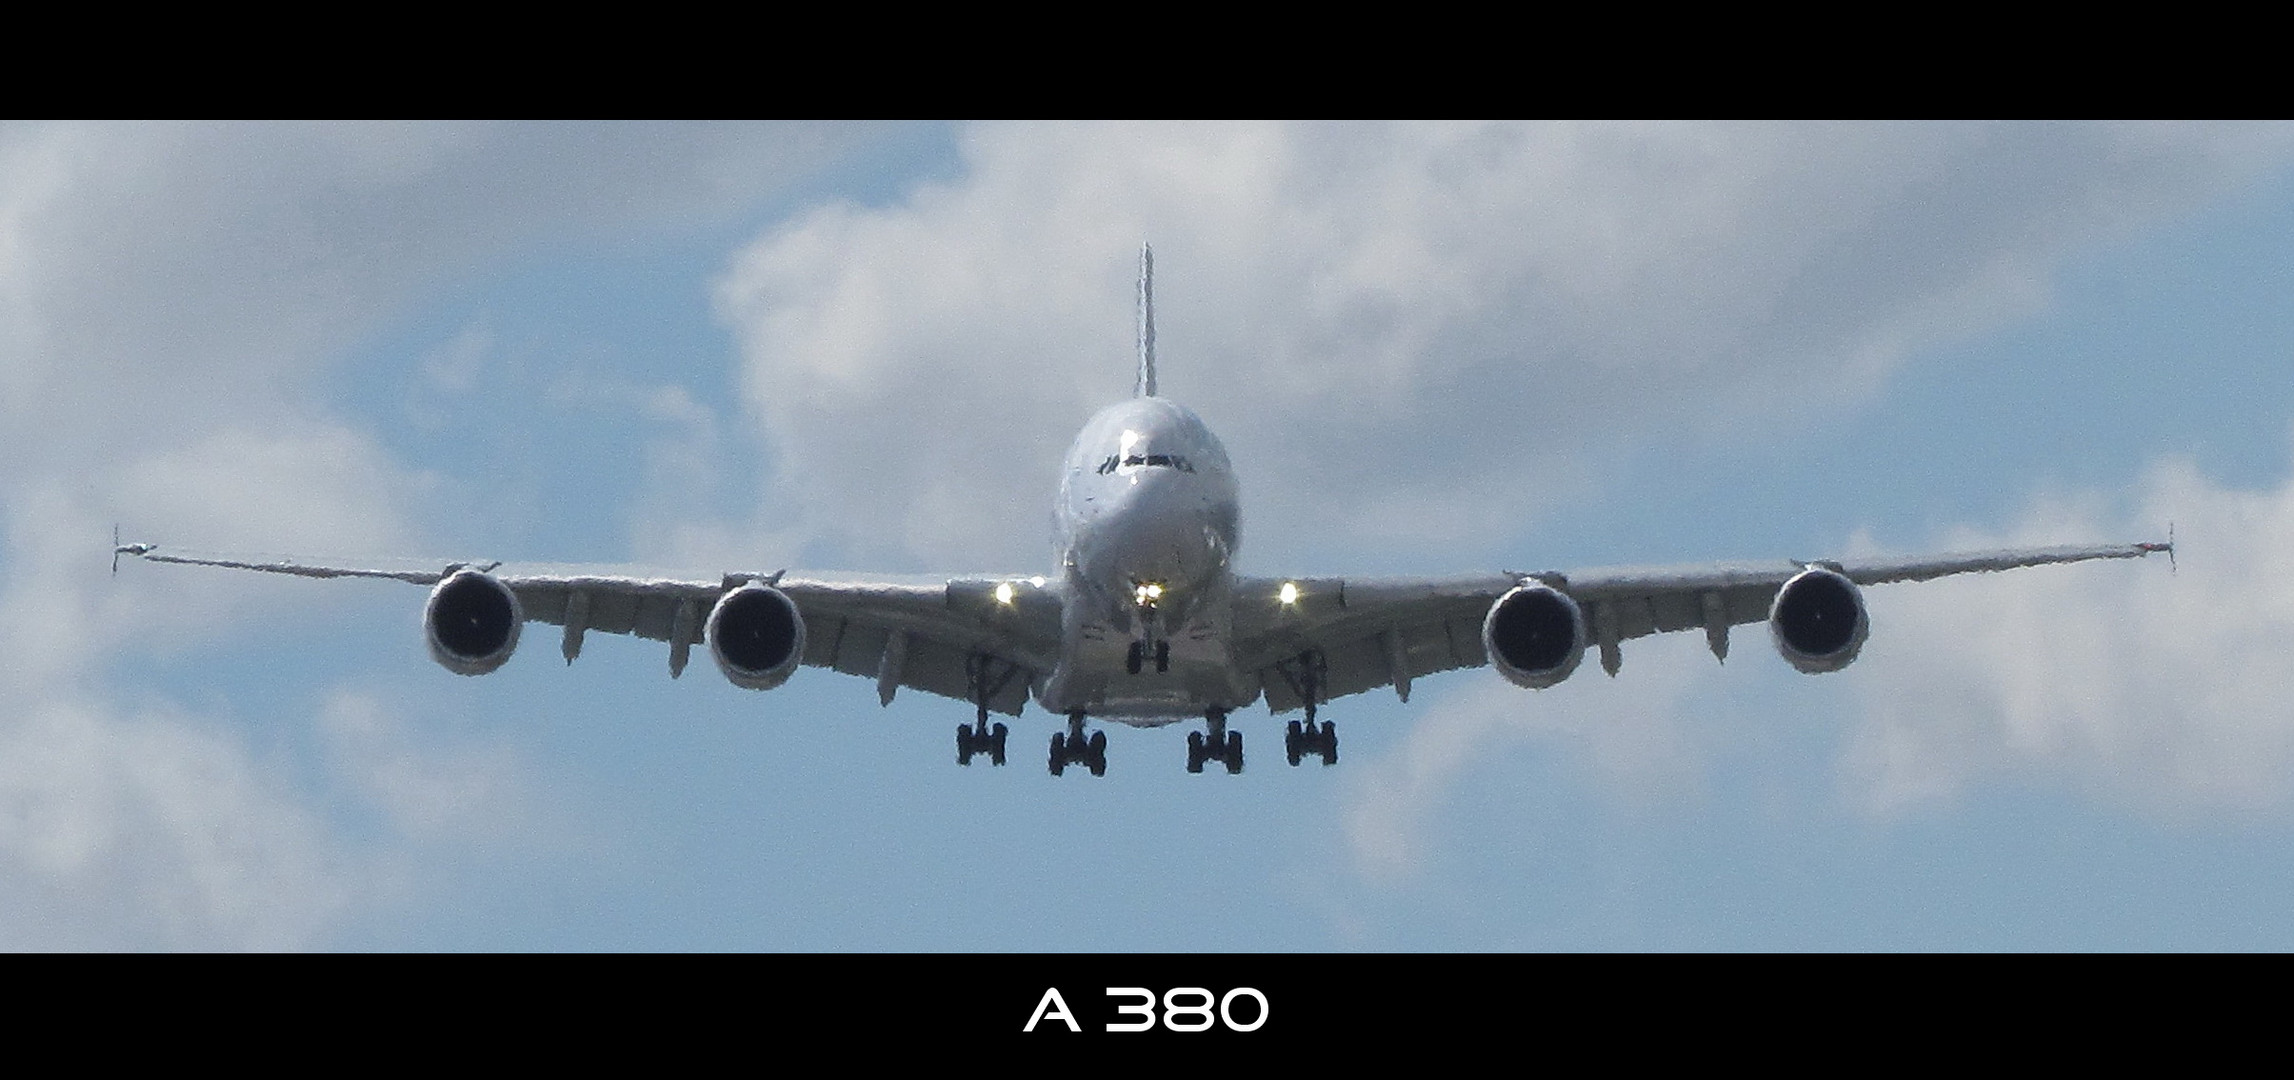 A380 im Landeanflug - Le Bourget 2011